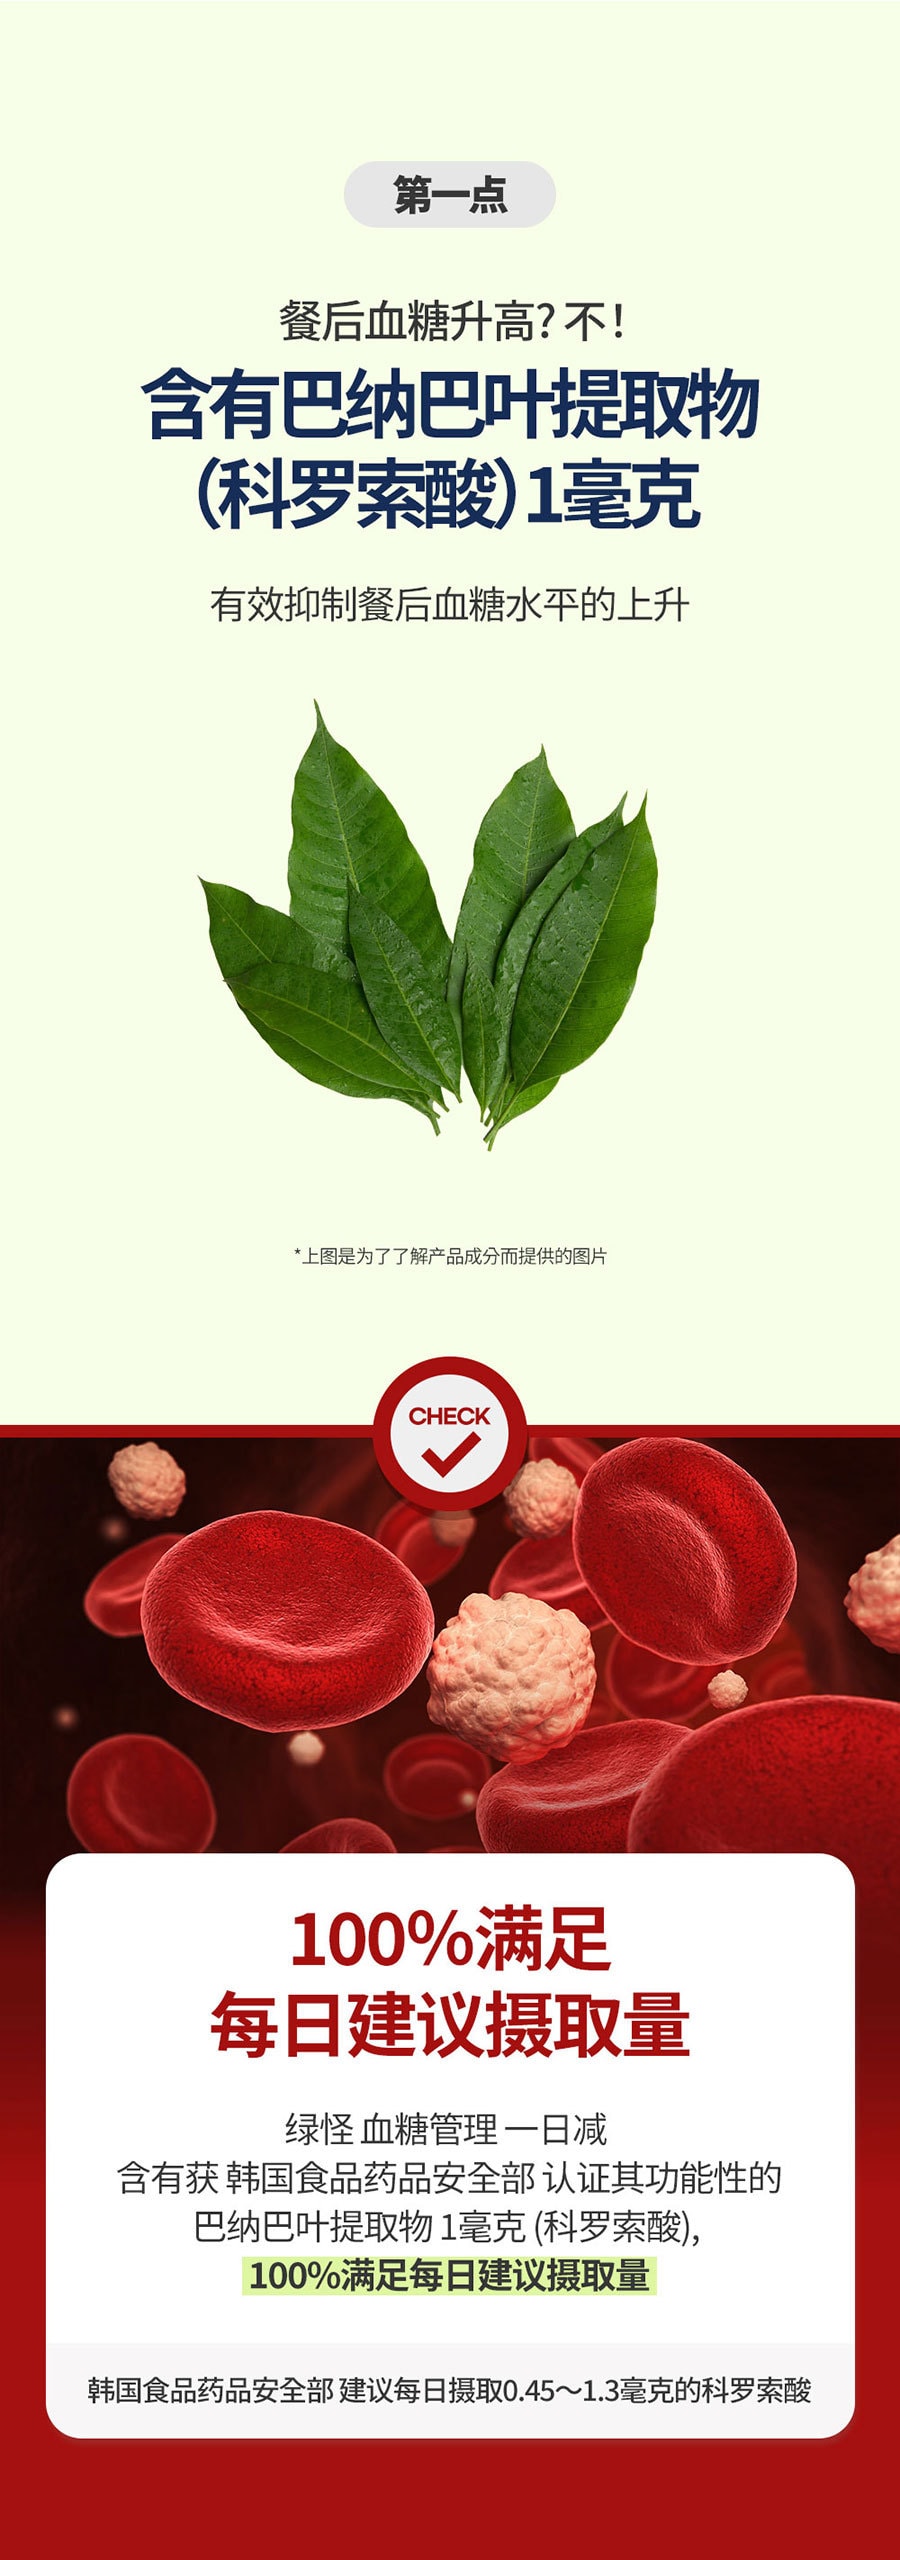 韓國 [Green Monster] 血糖管理一日減 健康補助食品 - 28粒